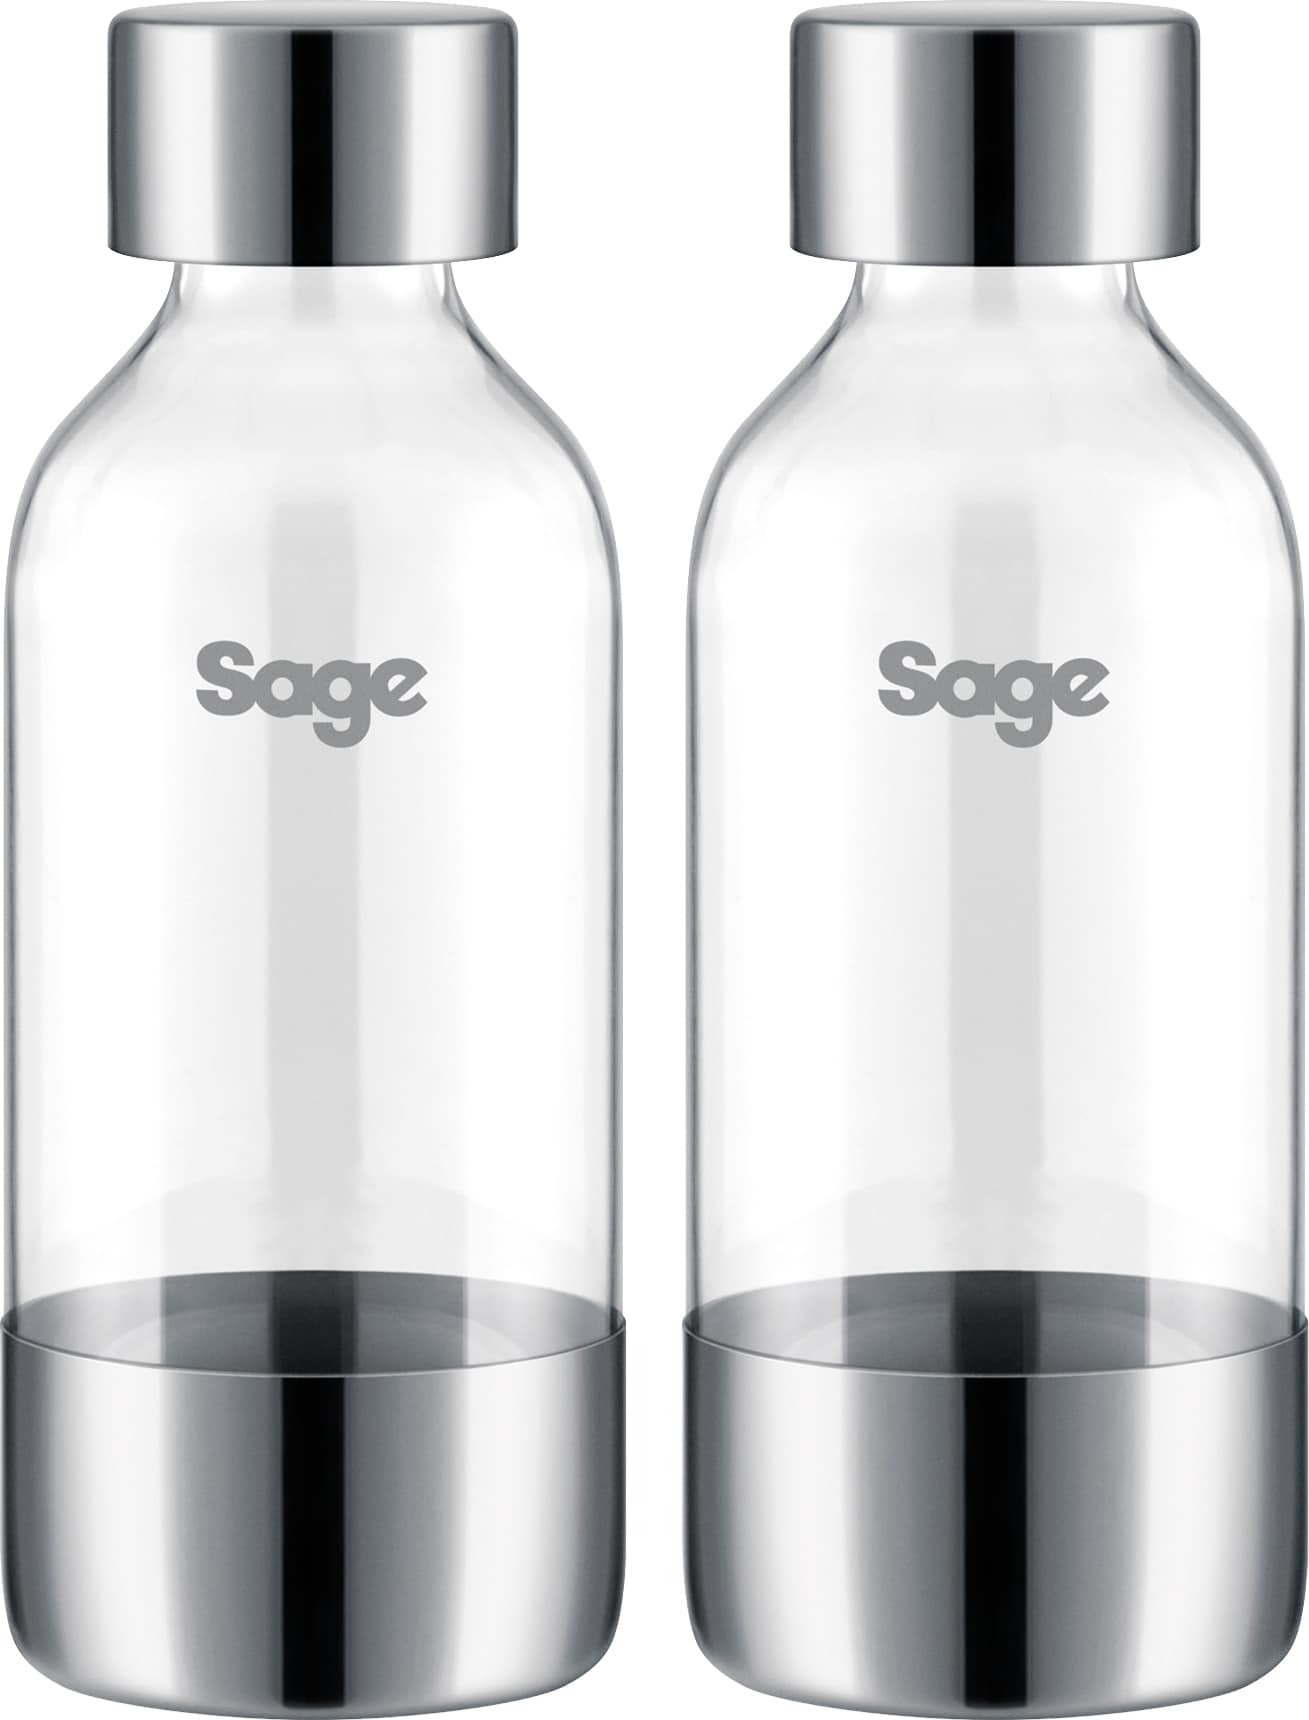 Sage kulsyreflasker 61160243 (2-pakke)